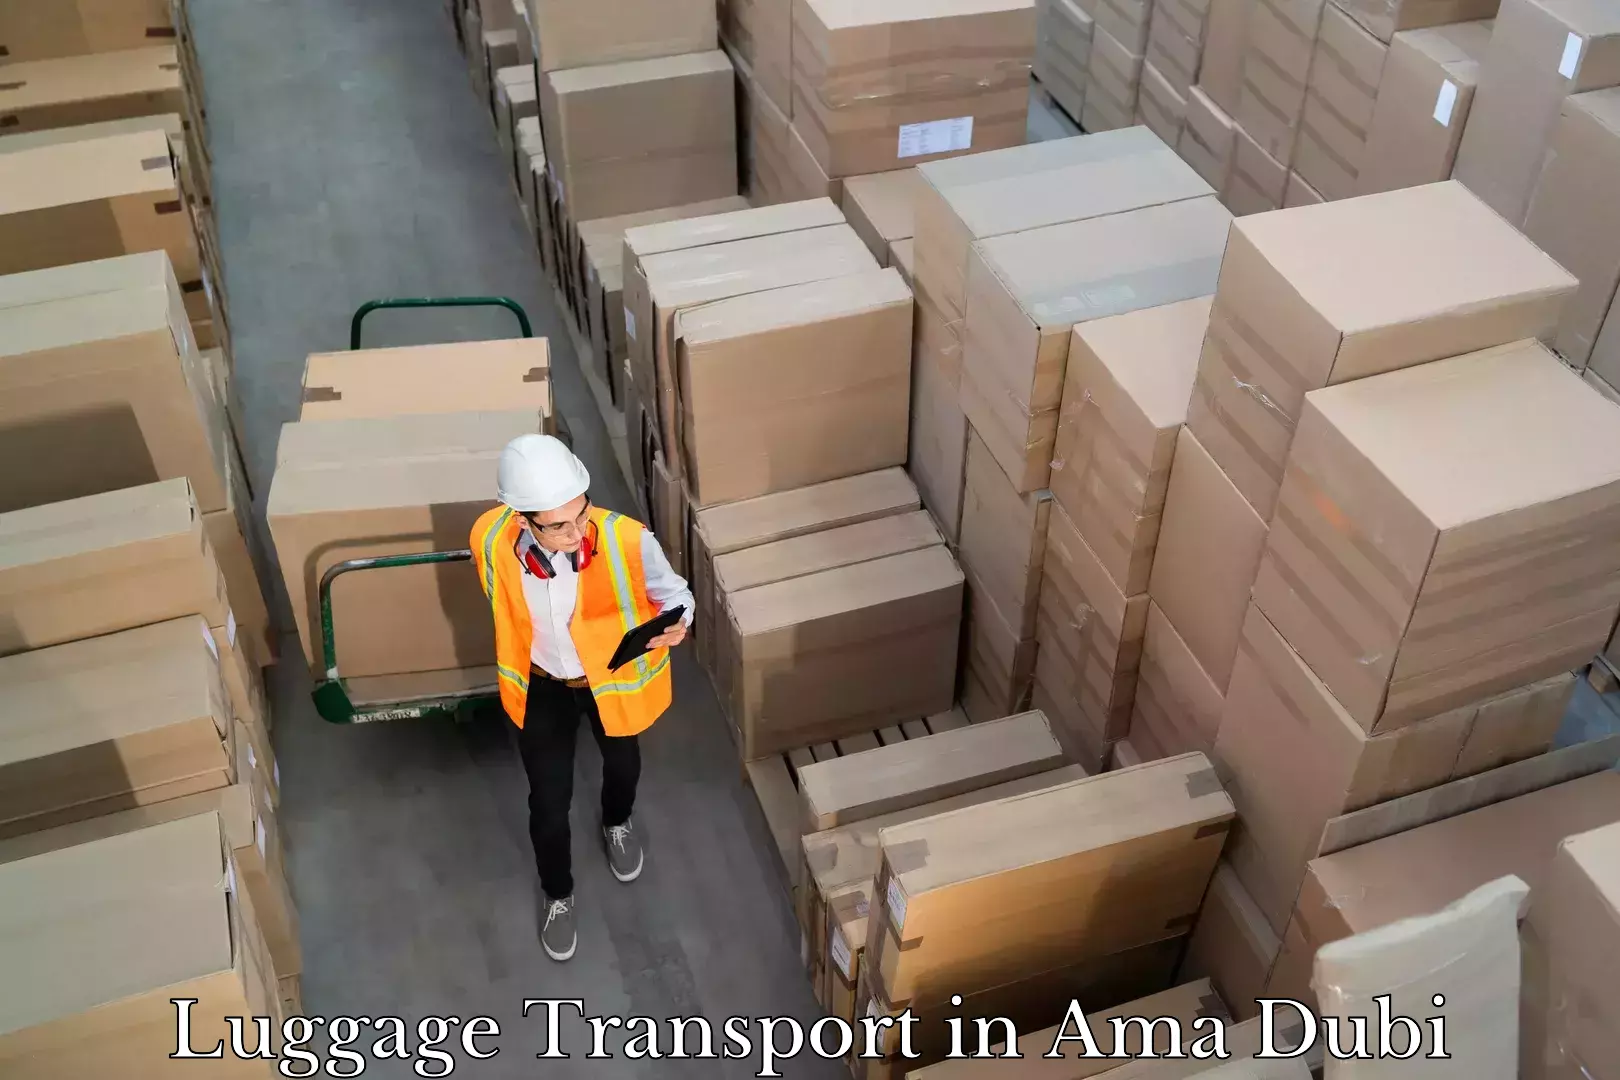 Baggage transport estimate in Ama Dubi